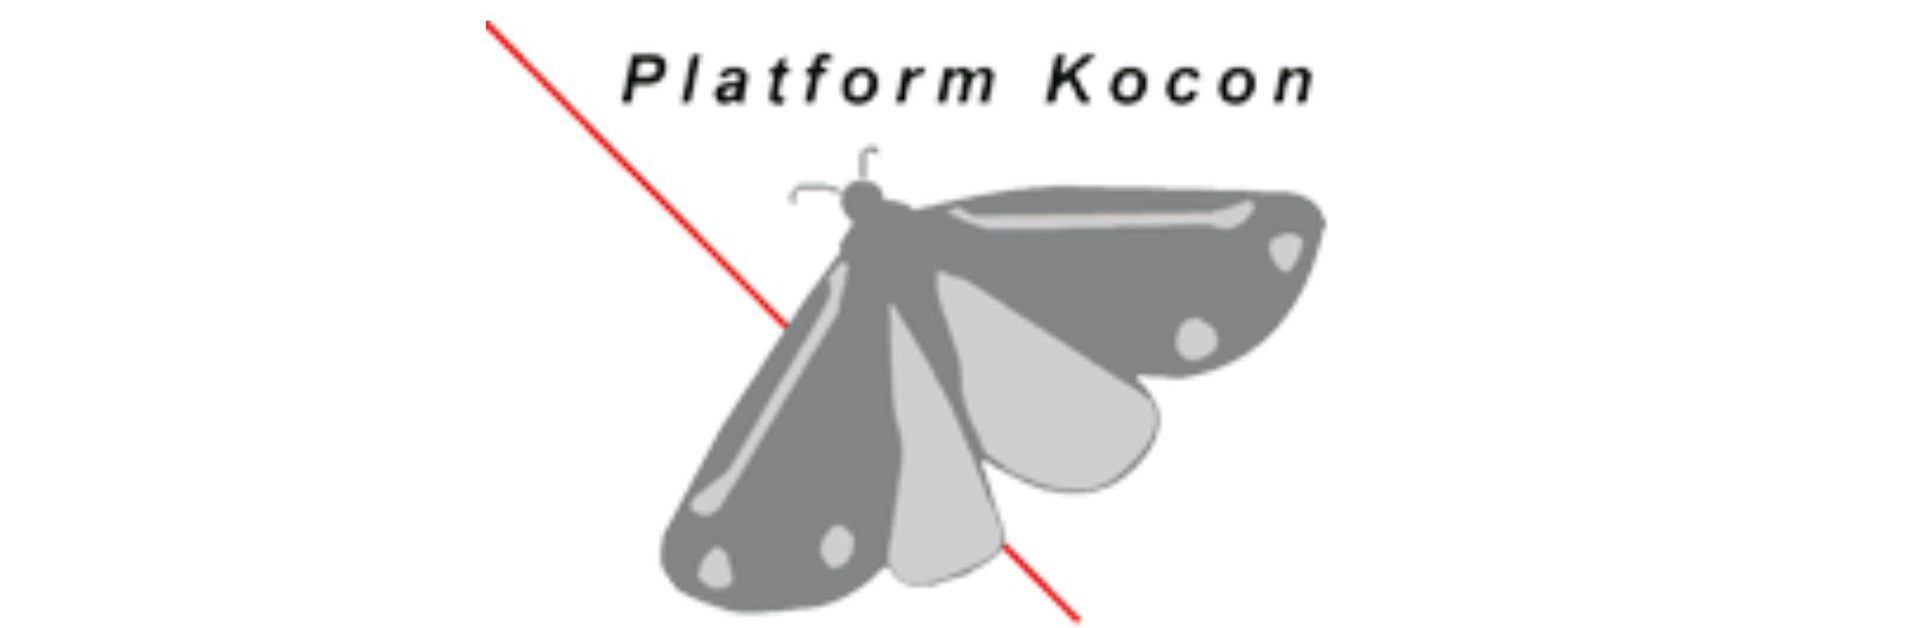 Platform Kocon